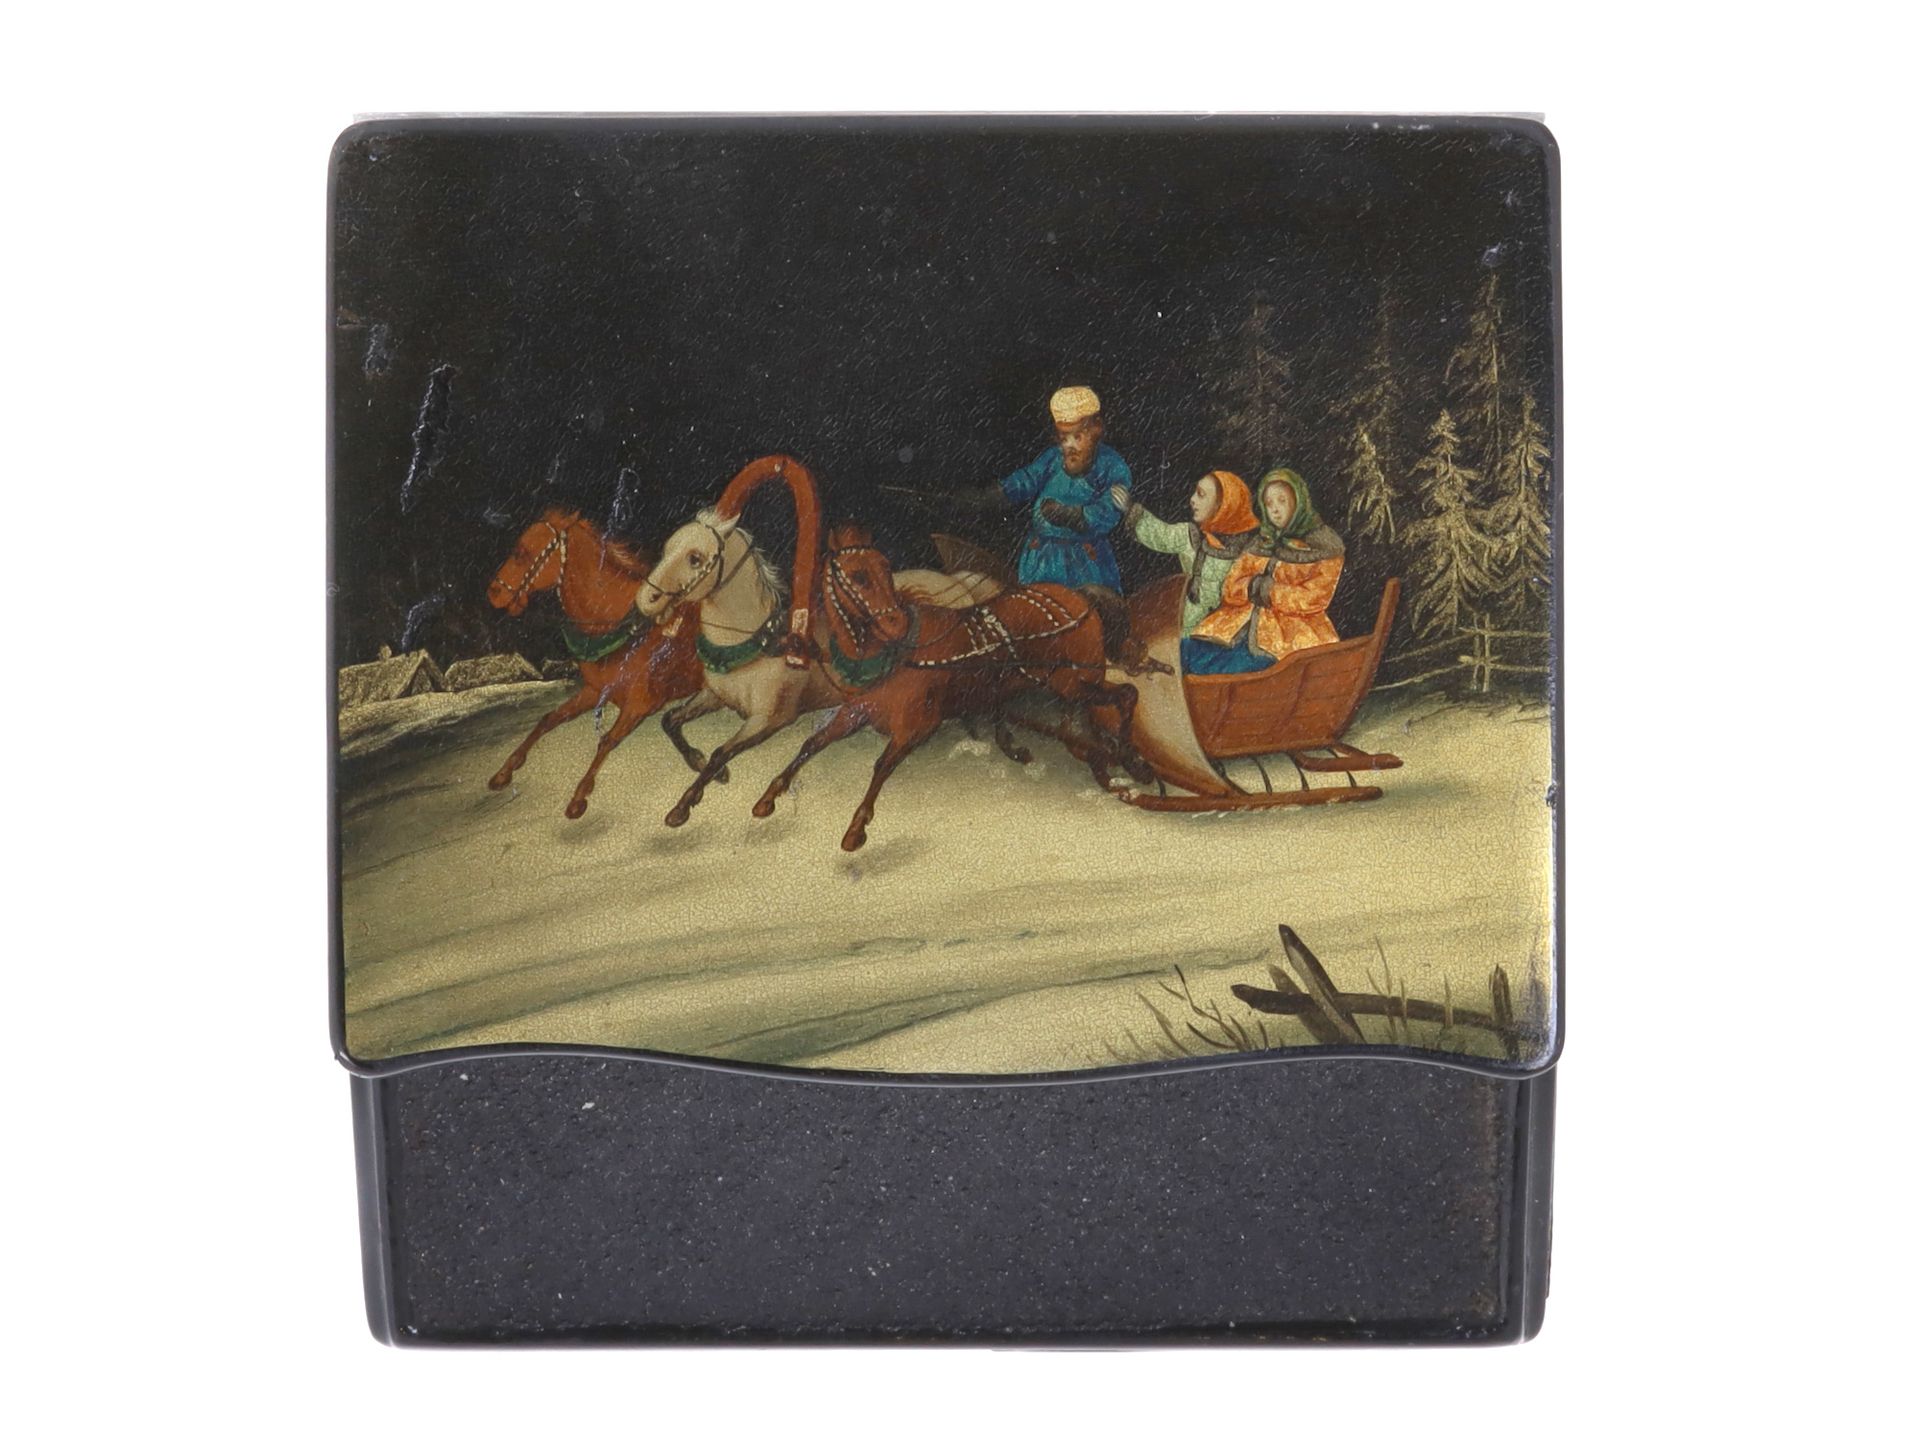 Null 
古老的俄罗斯火柴盒和火钳，Lukutin工厂，大约在1863-1876年。纸浆，漆器，手绘了一个场景，描绘了两个女孩和一个出租车司机在三匹马拉的车上&hellip;